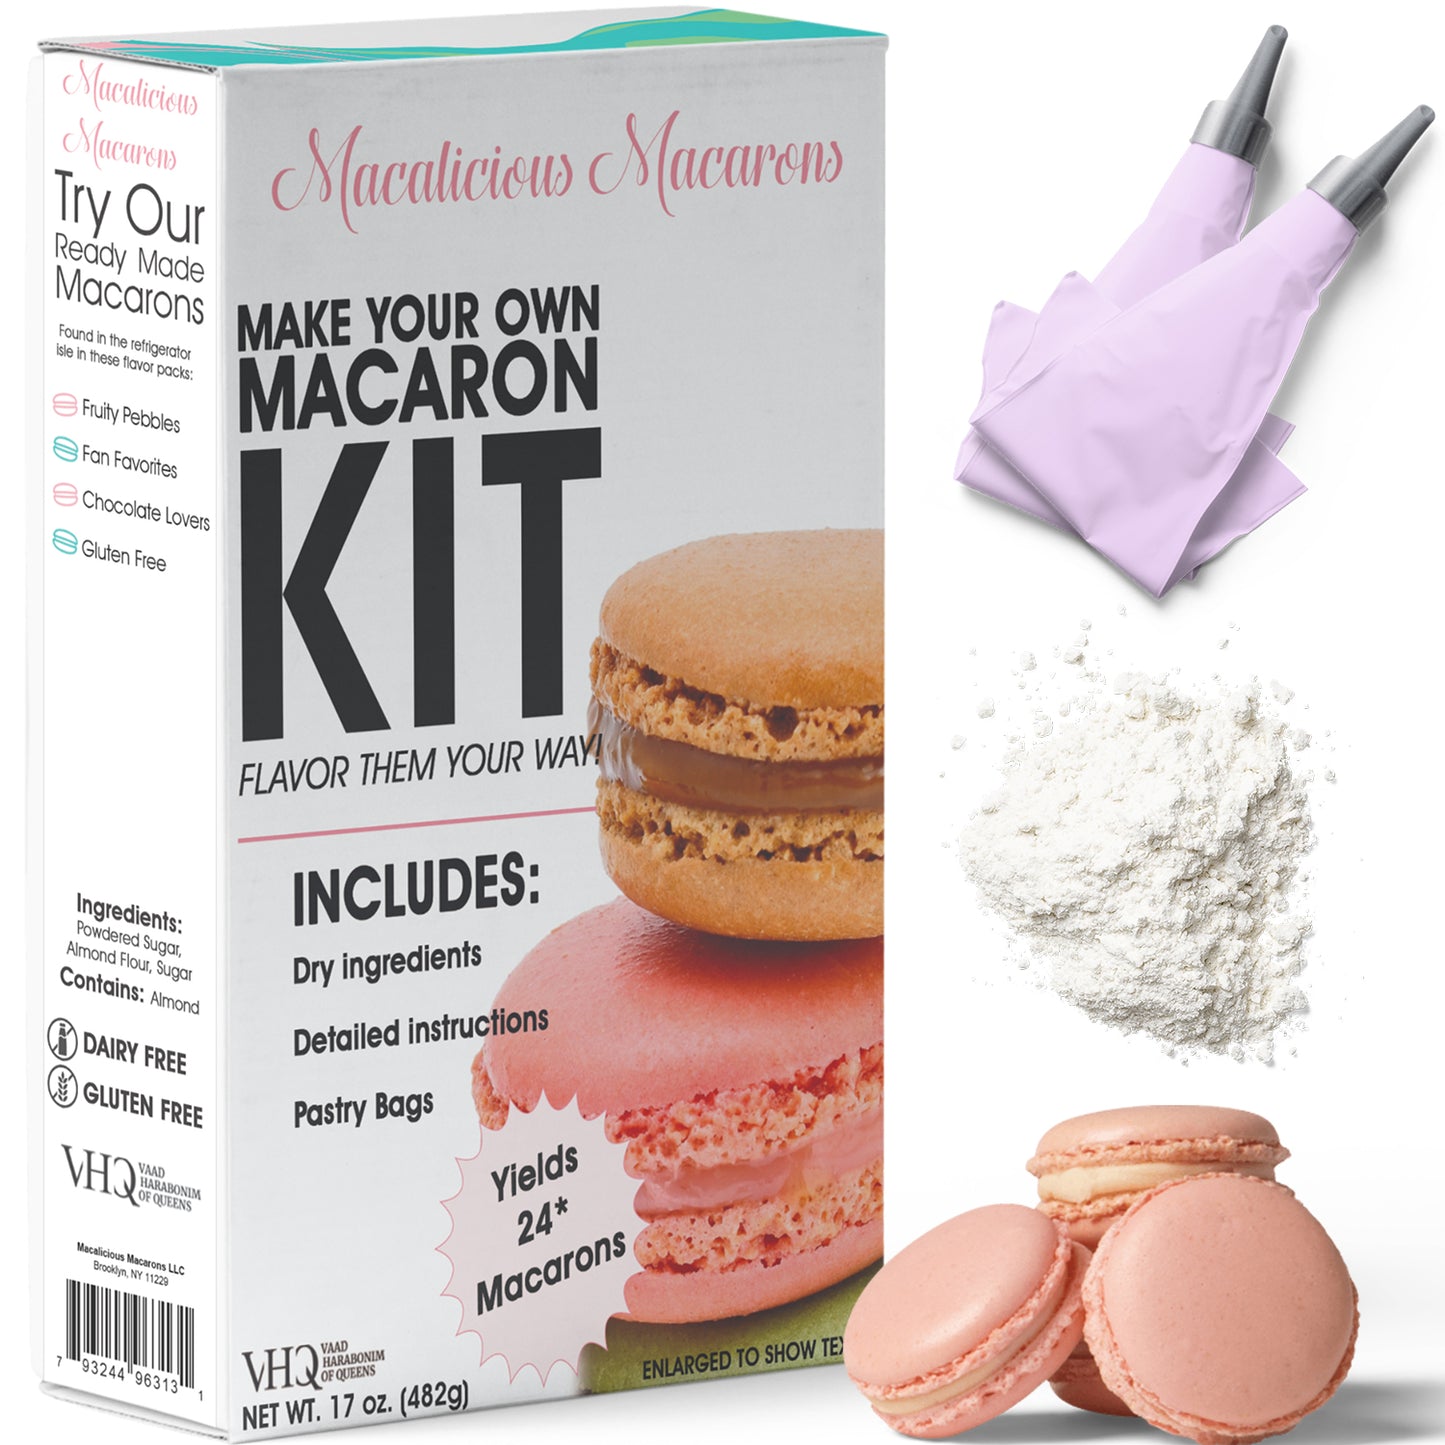 Macalicious Macarons DIY Kit - Makes 24 Macarons